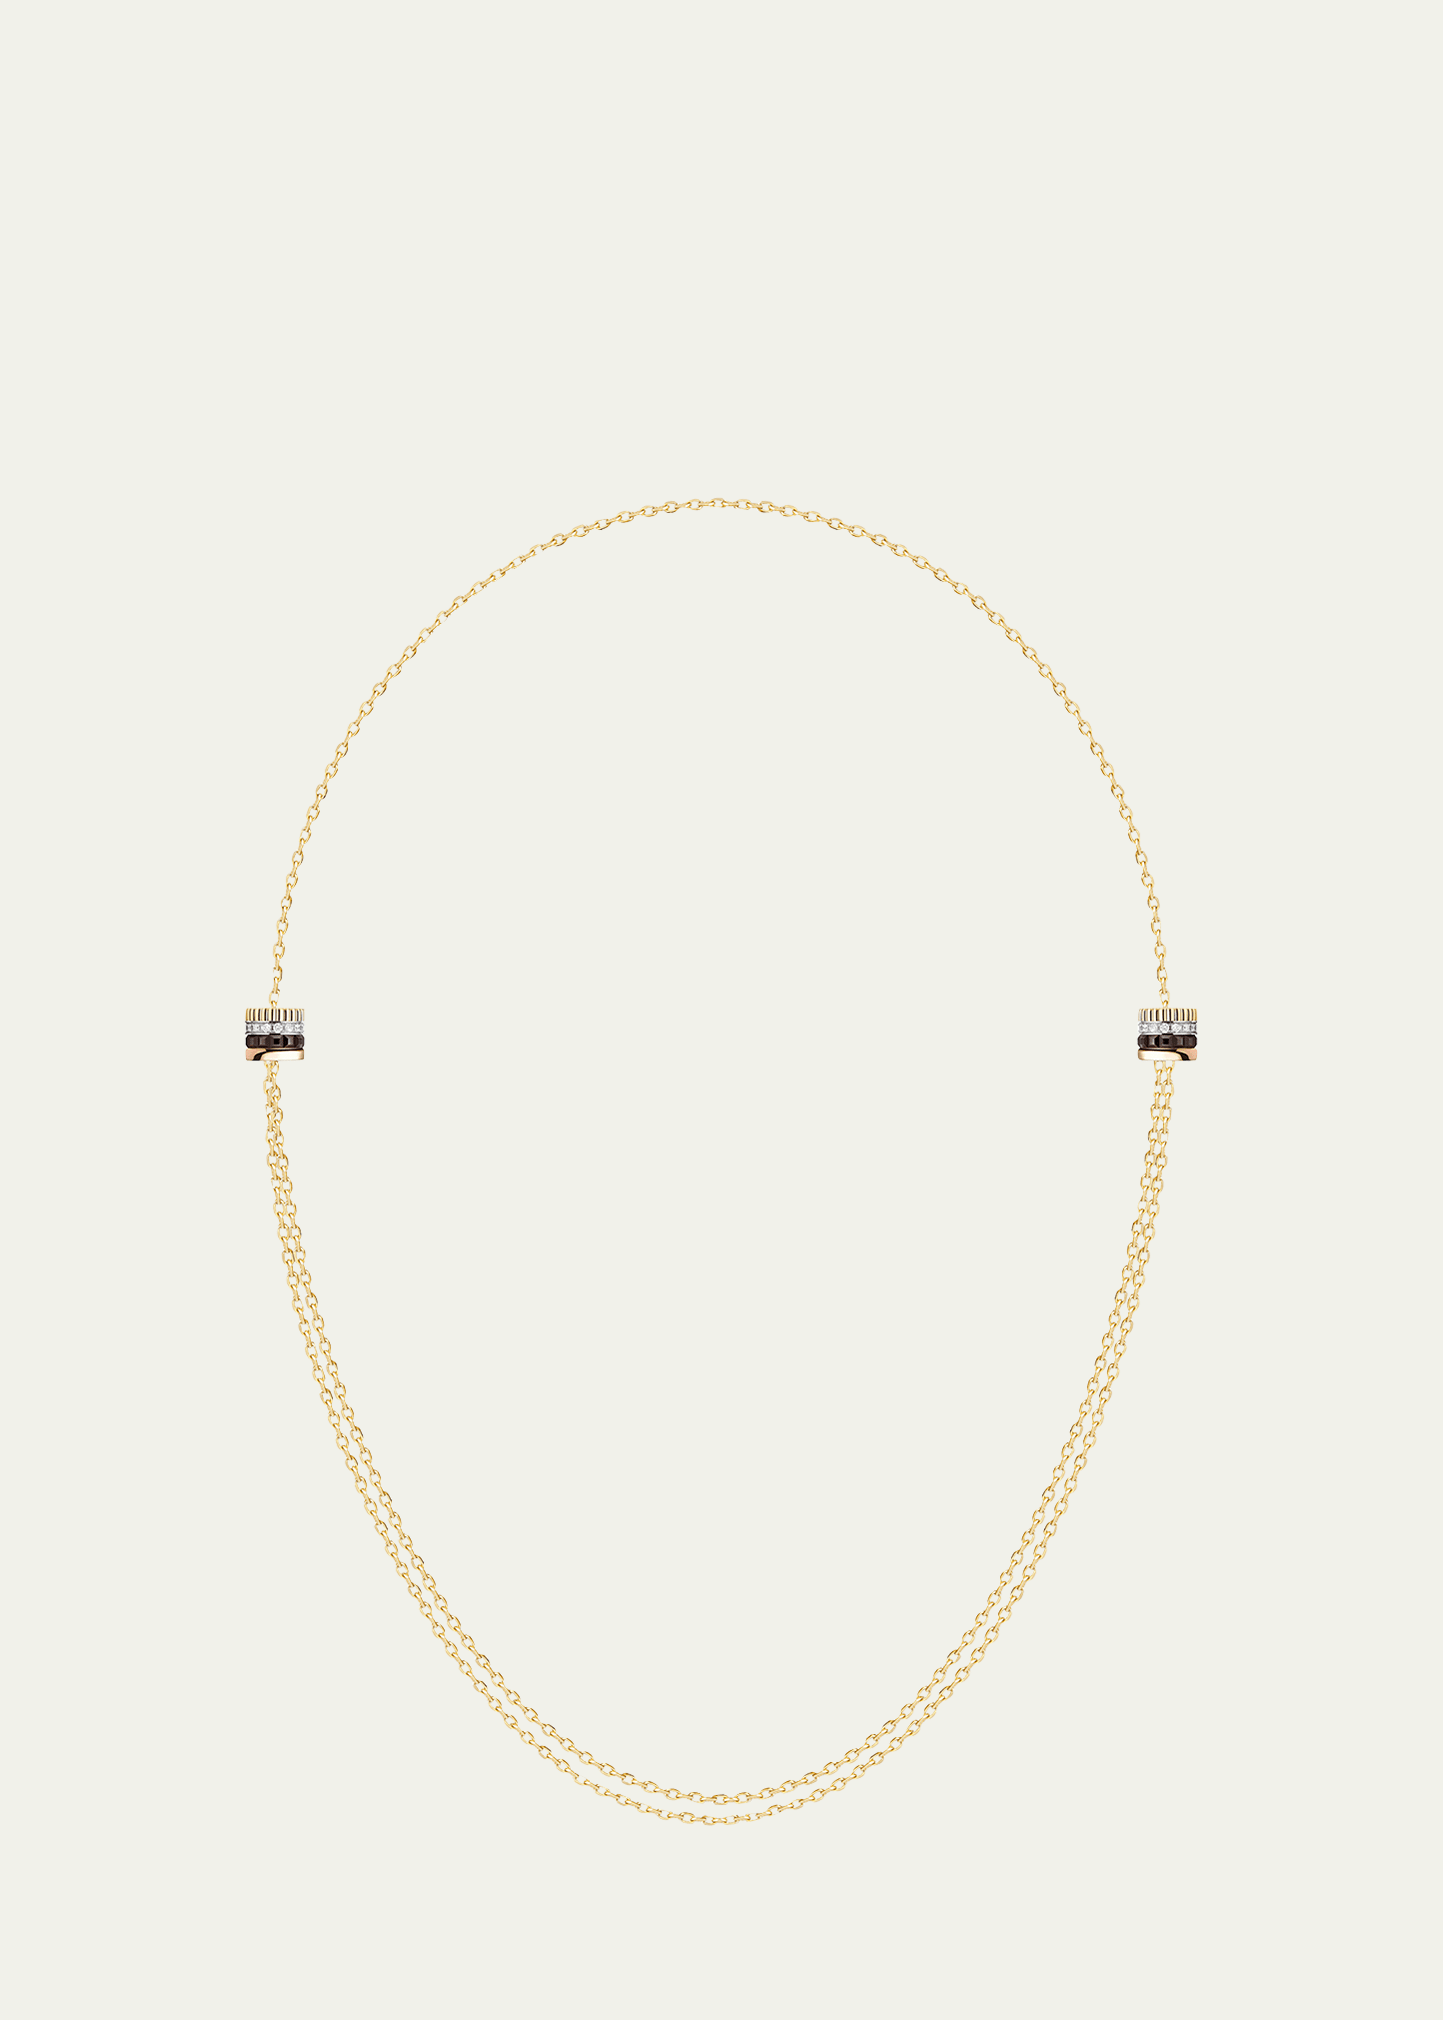 Boucheron Quatre Classique Necklace with 2 Motifs